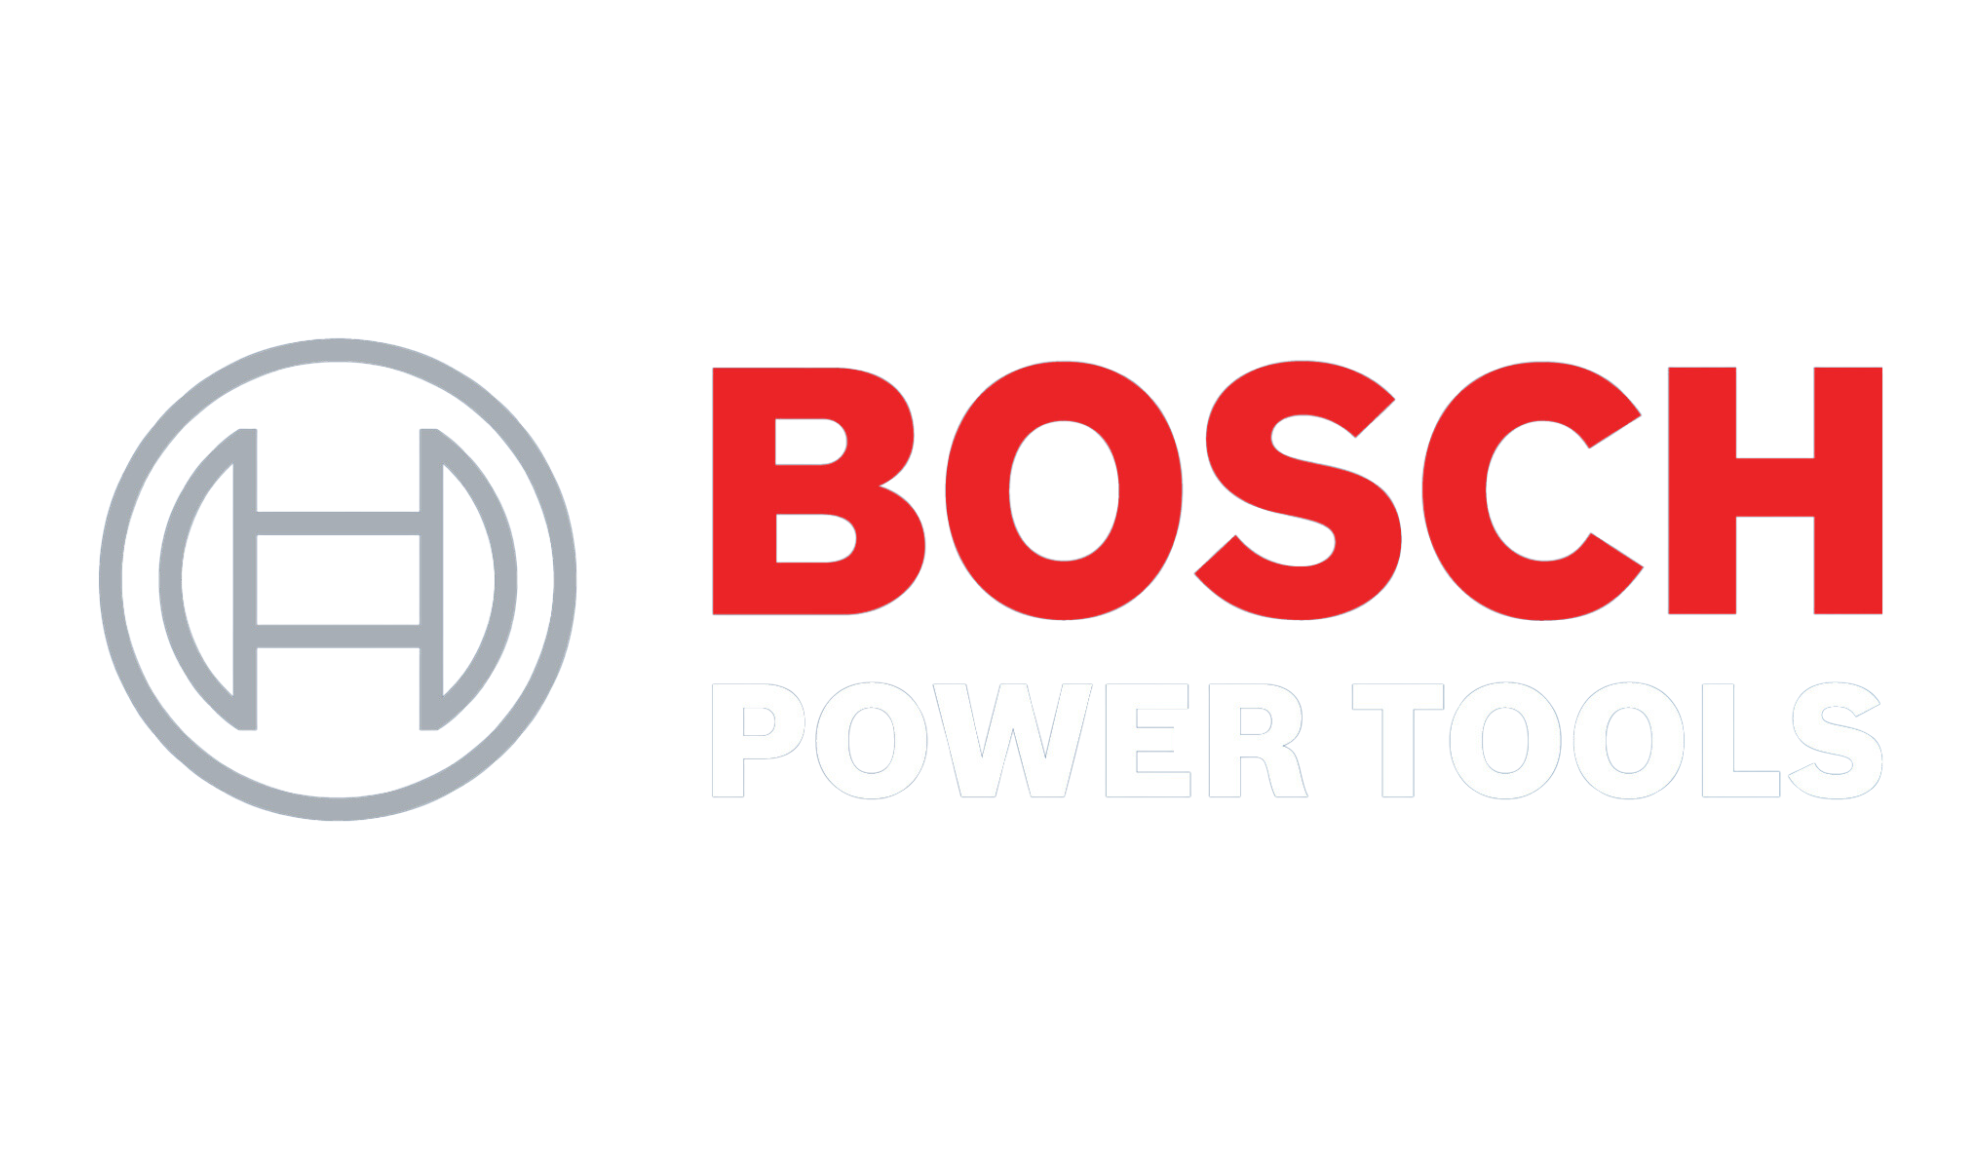 Bosch power tools 